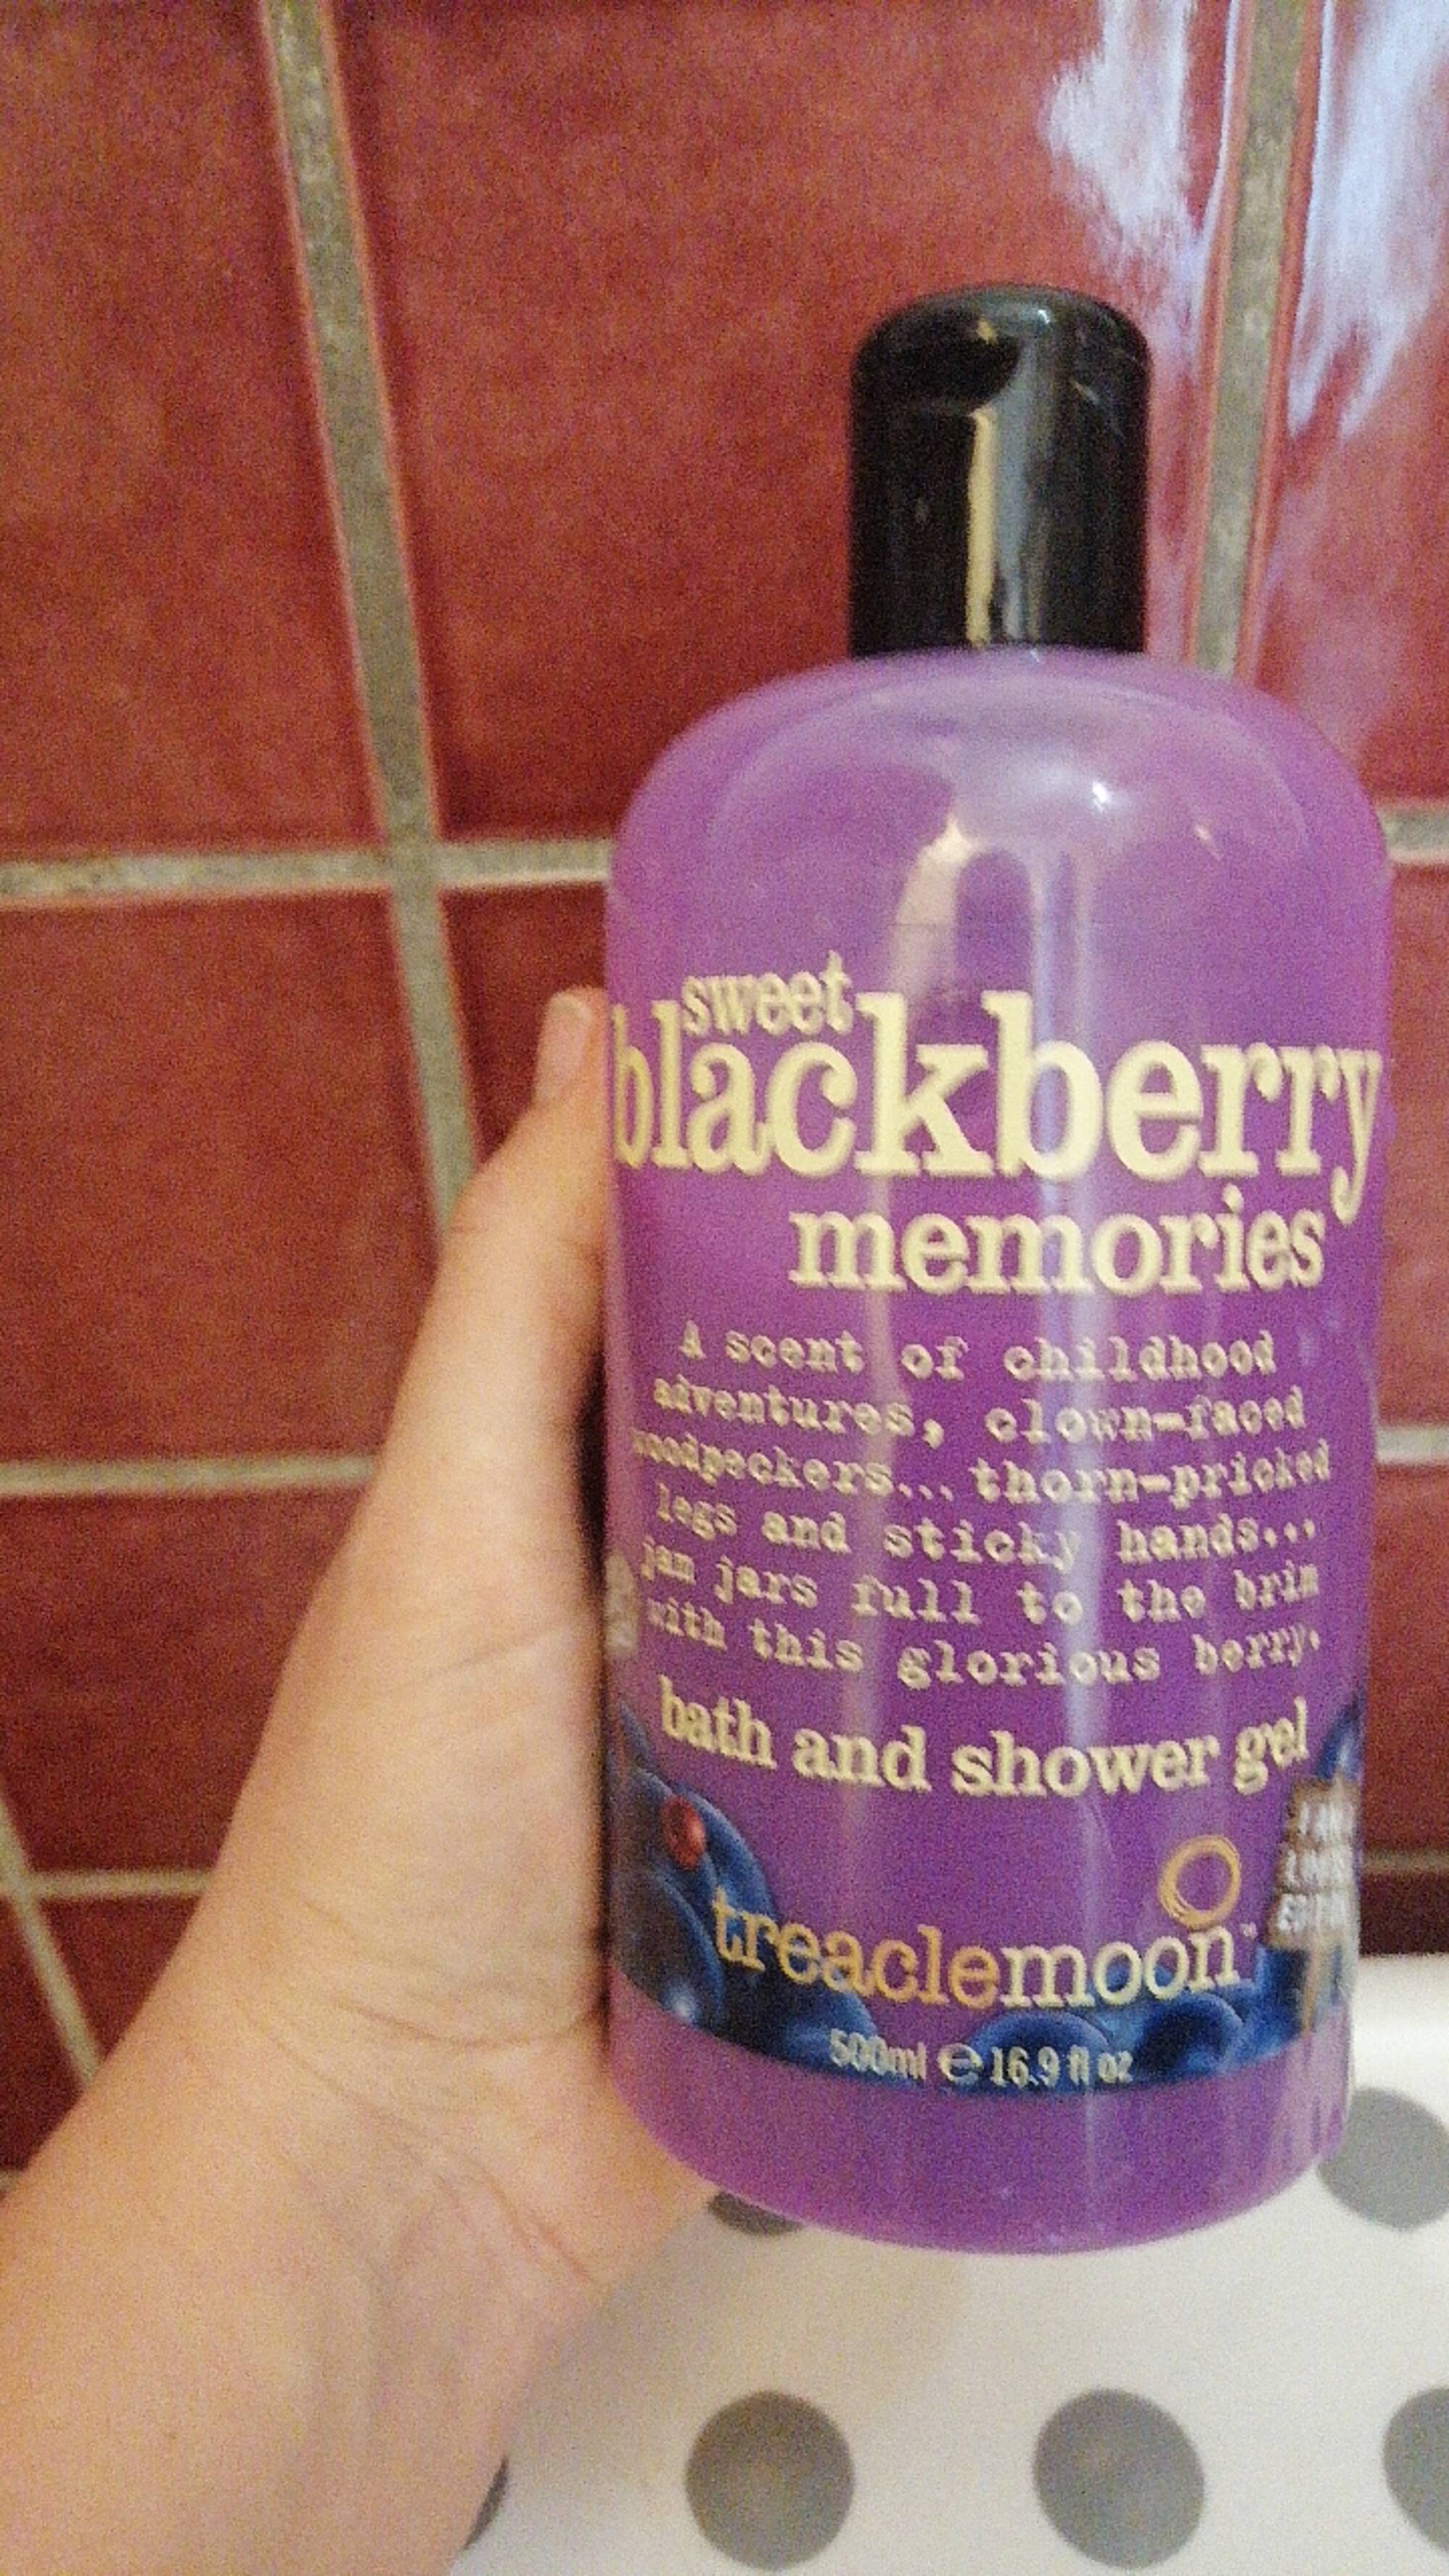 TREACLE MOON - Sweet blackberry memories - Bath and shower gel